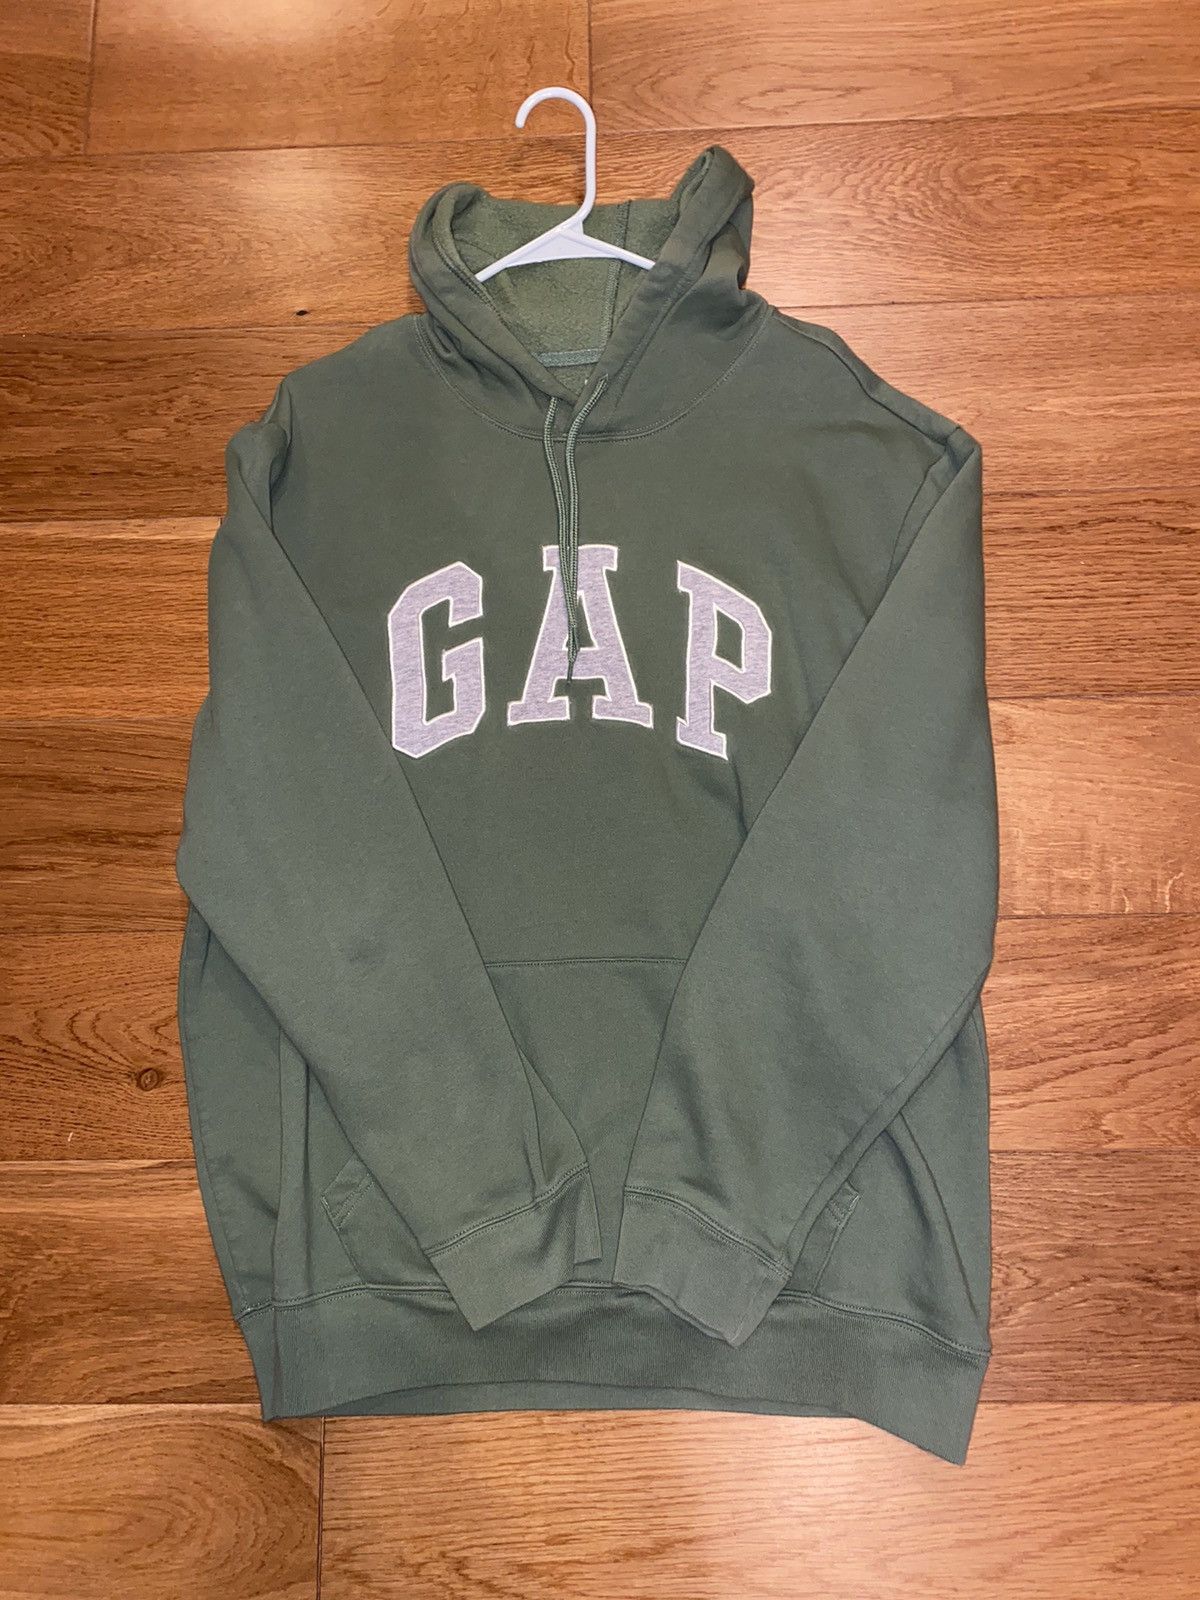 Gap Vintage Olive Gap Hoodie | Grailed